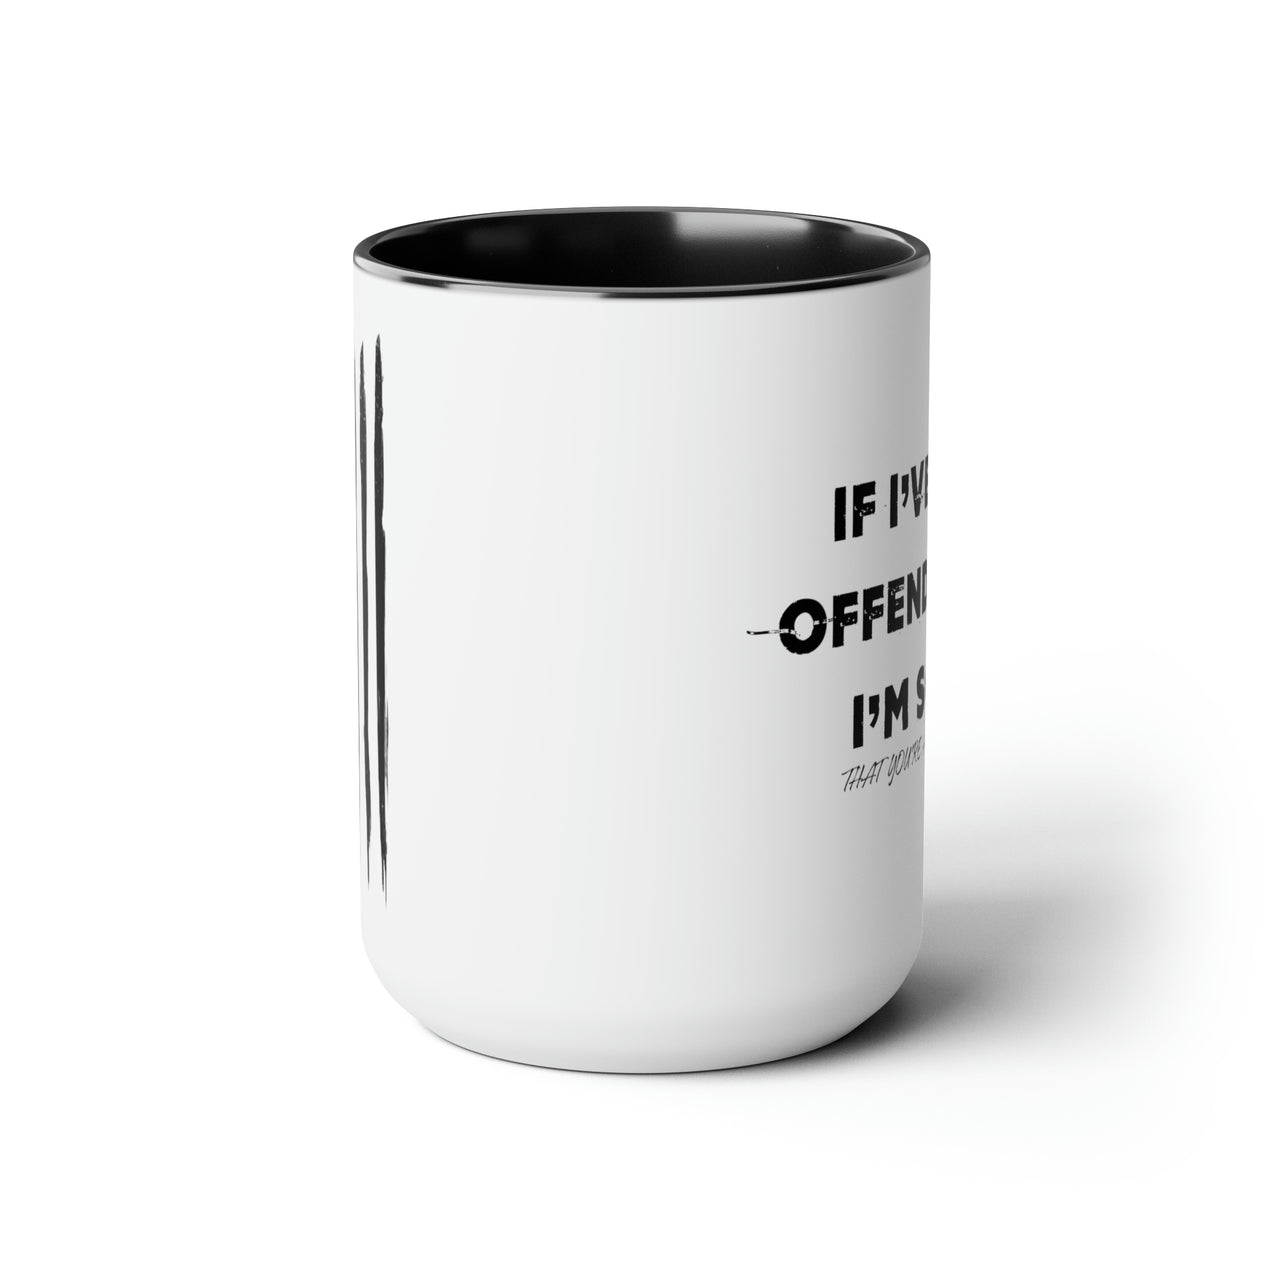 I’ve Ever Offended 15oz Coffee Mug